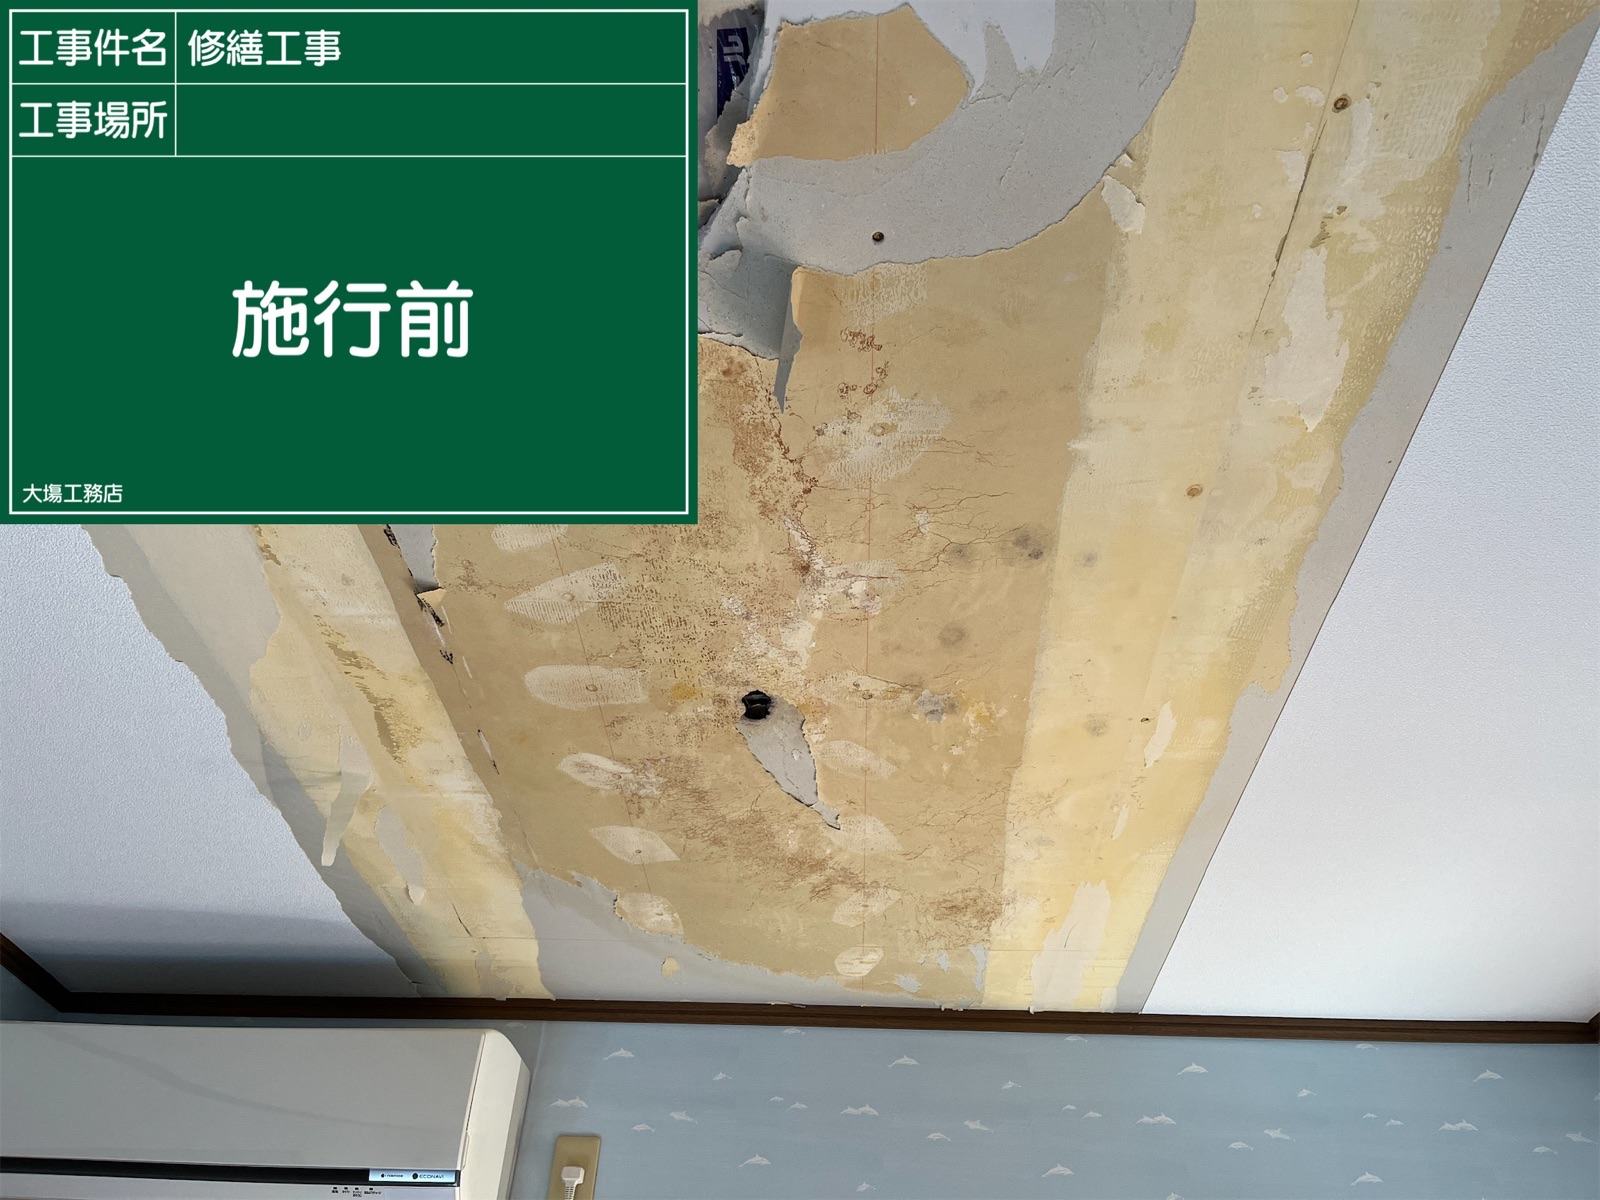 壁紙を剥がした天井